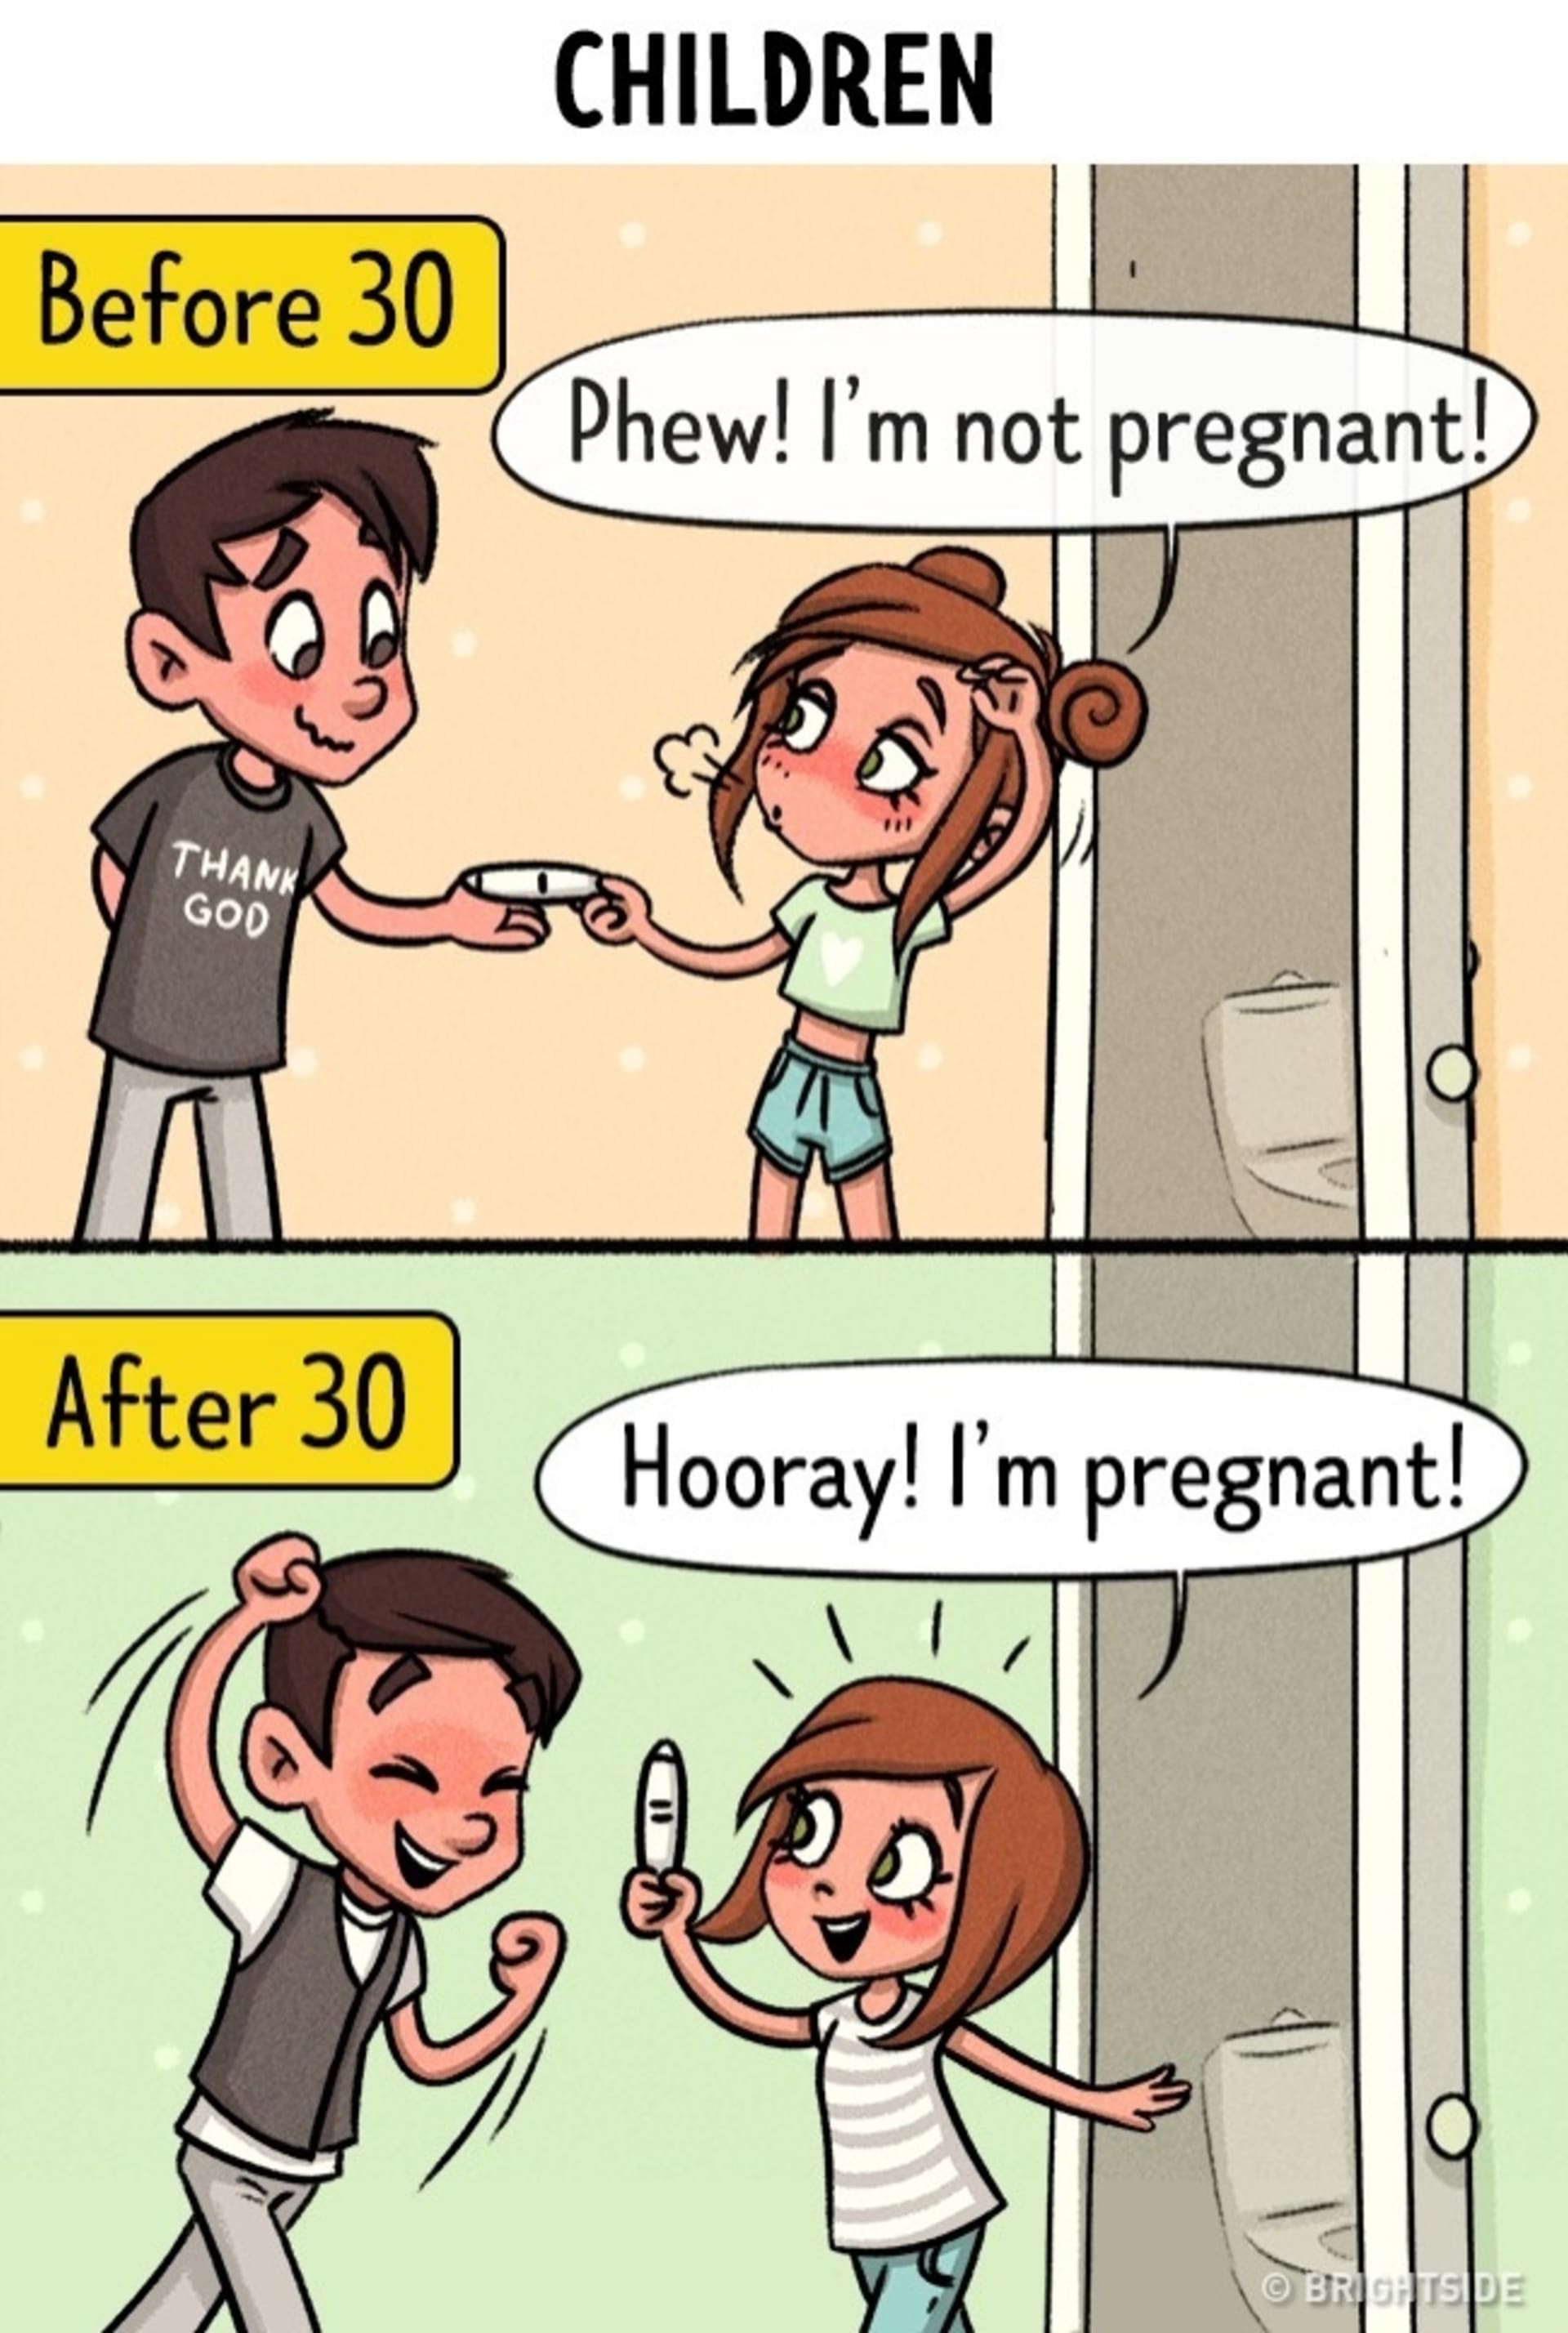 Jiný přístup k těhotenství